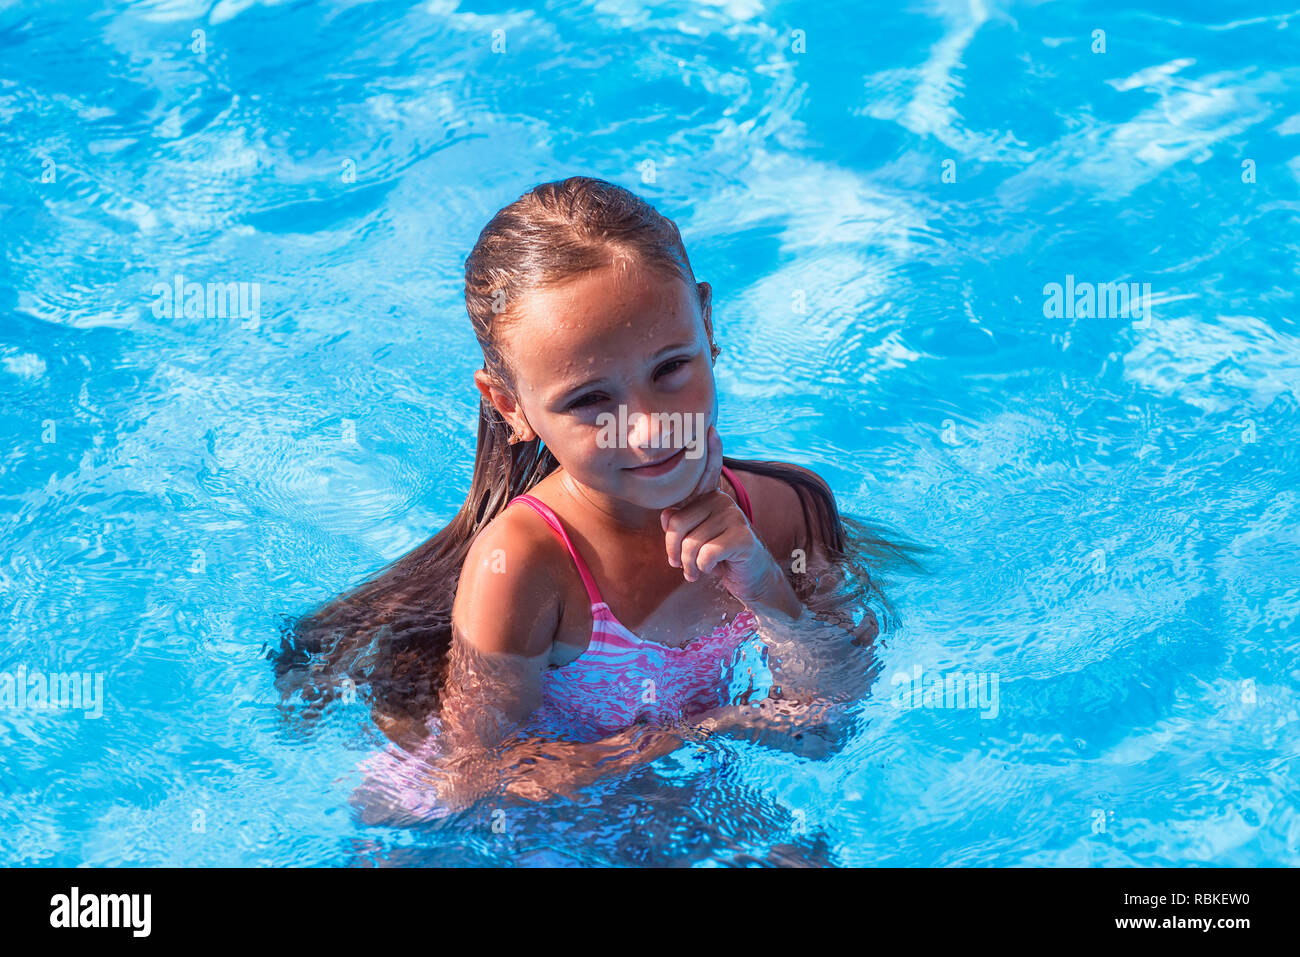 Alamy Little Girl Splash